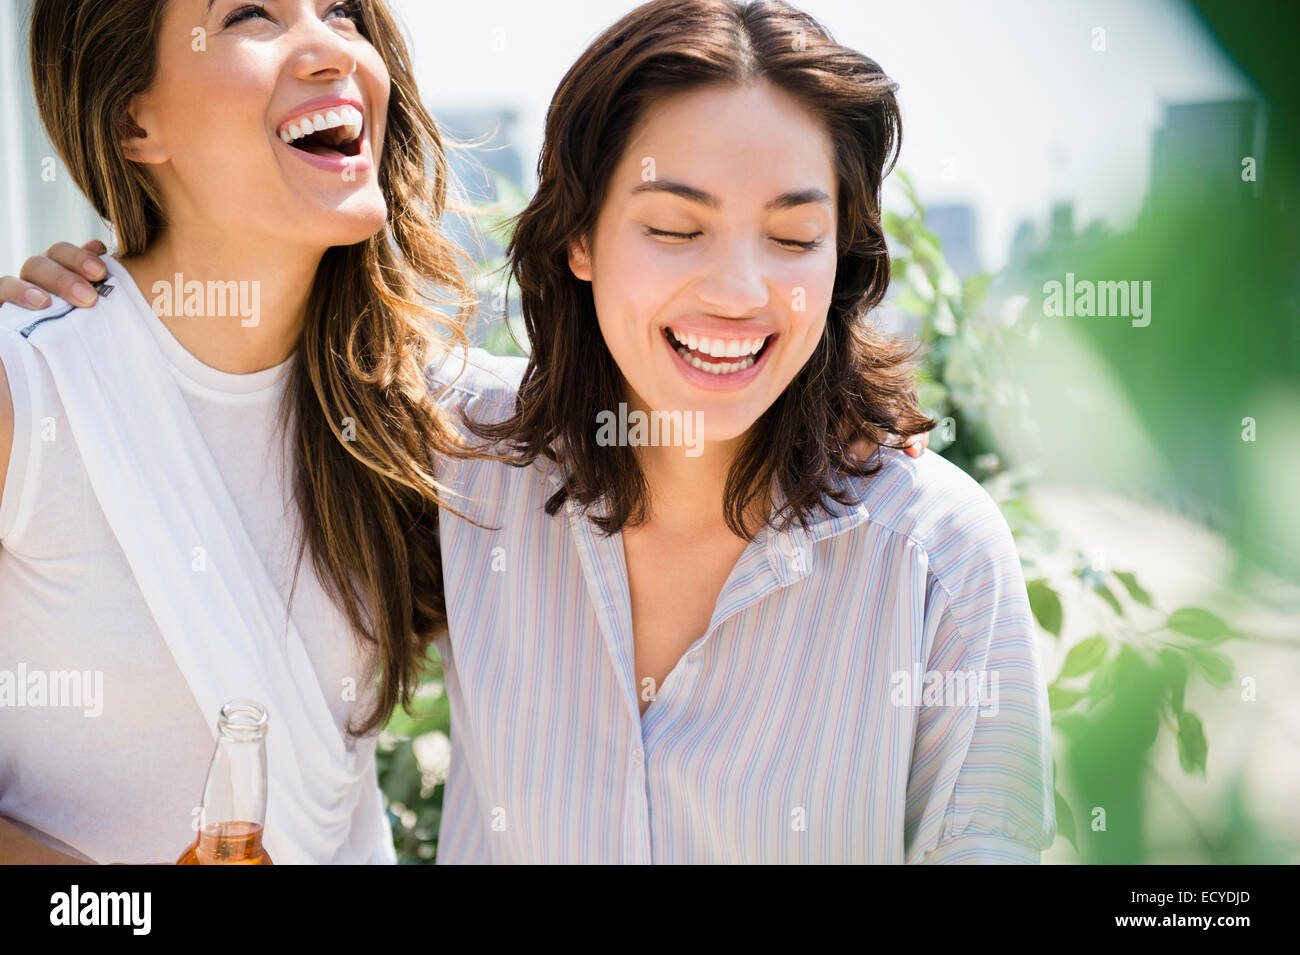 Les femmes hispaniques laughing outdoors Banque D'Images